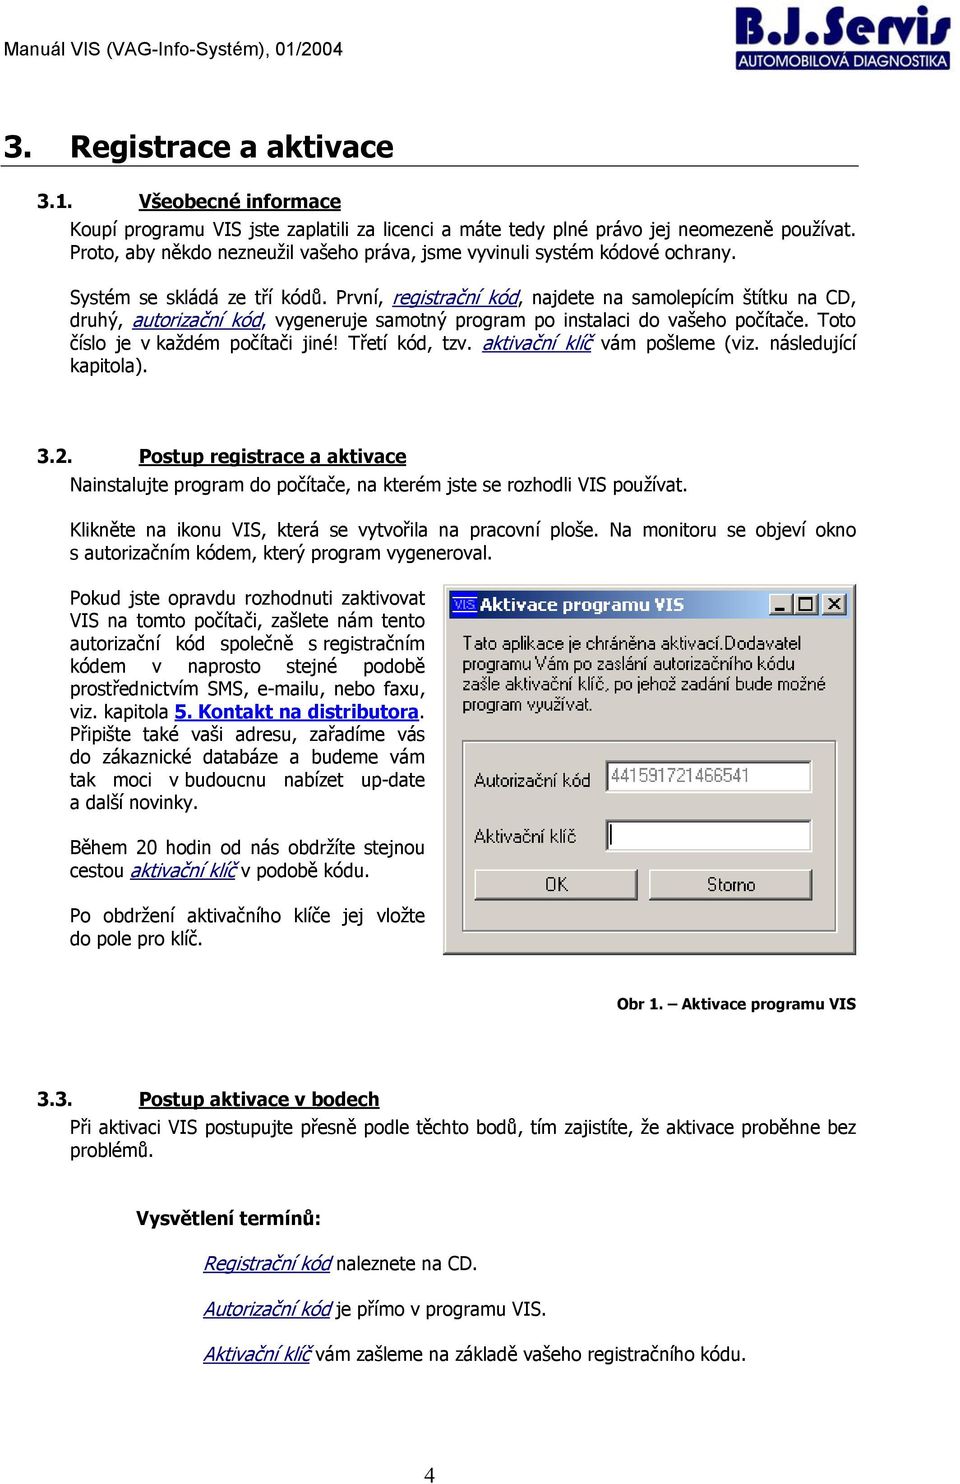 VIS. (VAG-Info-Systém) uživatelský manuál. 01/2004, Jan Svoboda, B.J.Servis  - PDF Free Download